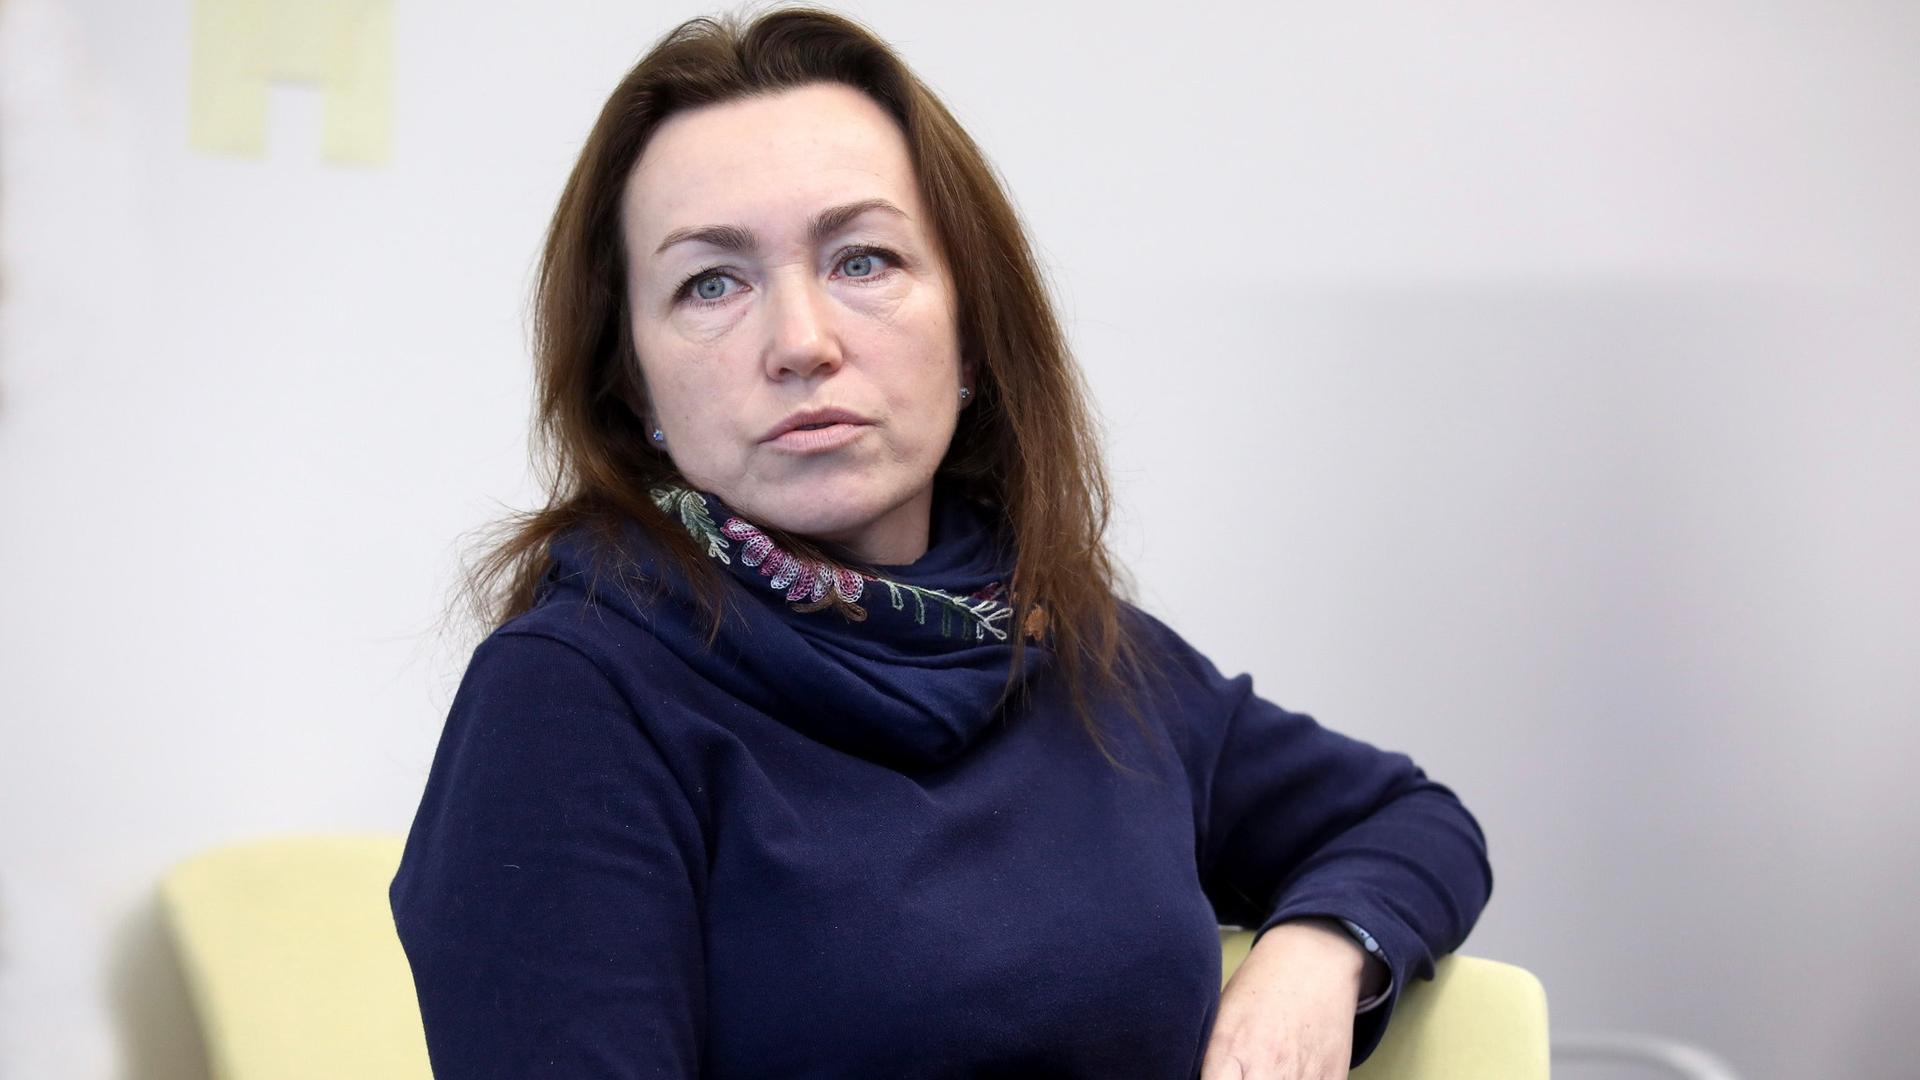 Portrait of Alsu Kurmasheva,  a Russian-American journalist, who is wearing a purple sweater.